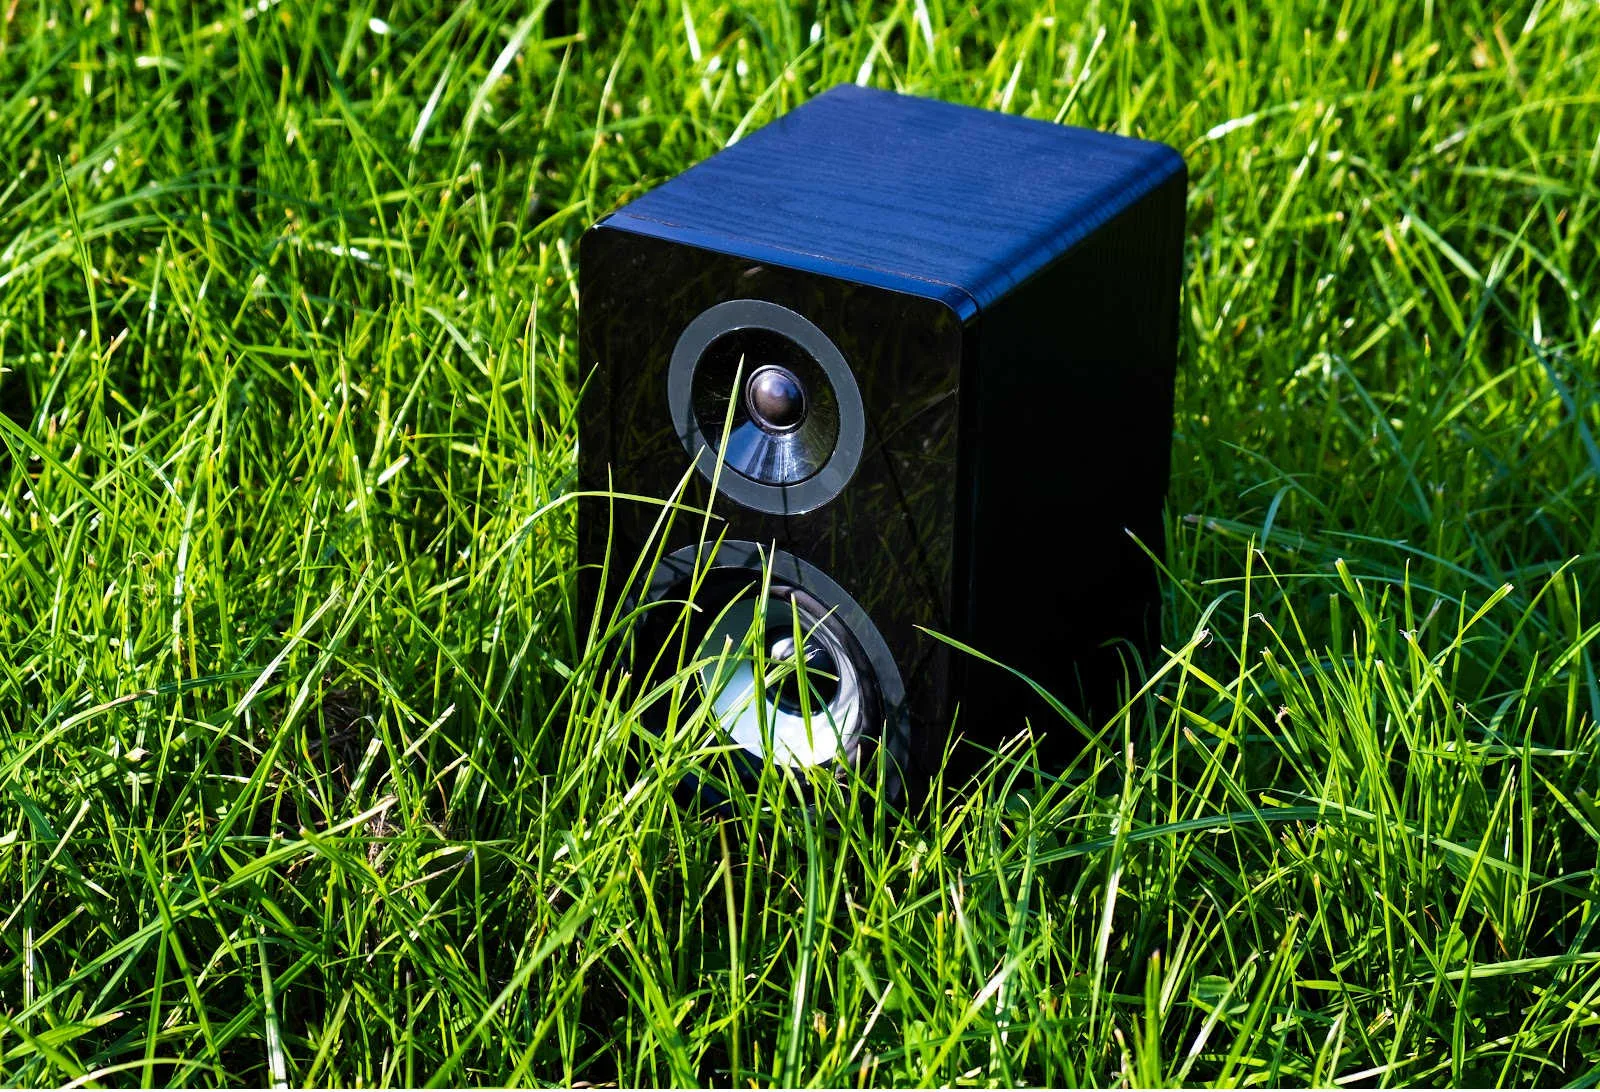 Outdoor Speakers